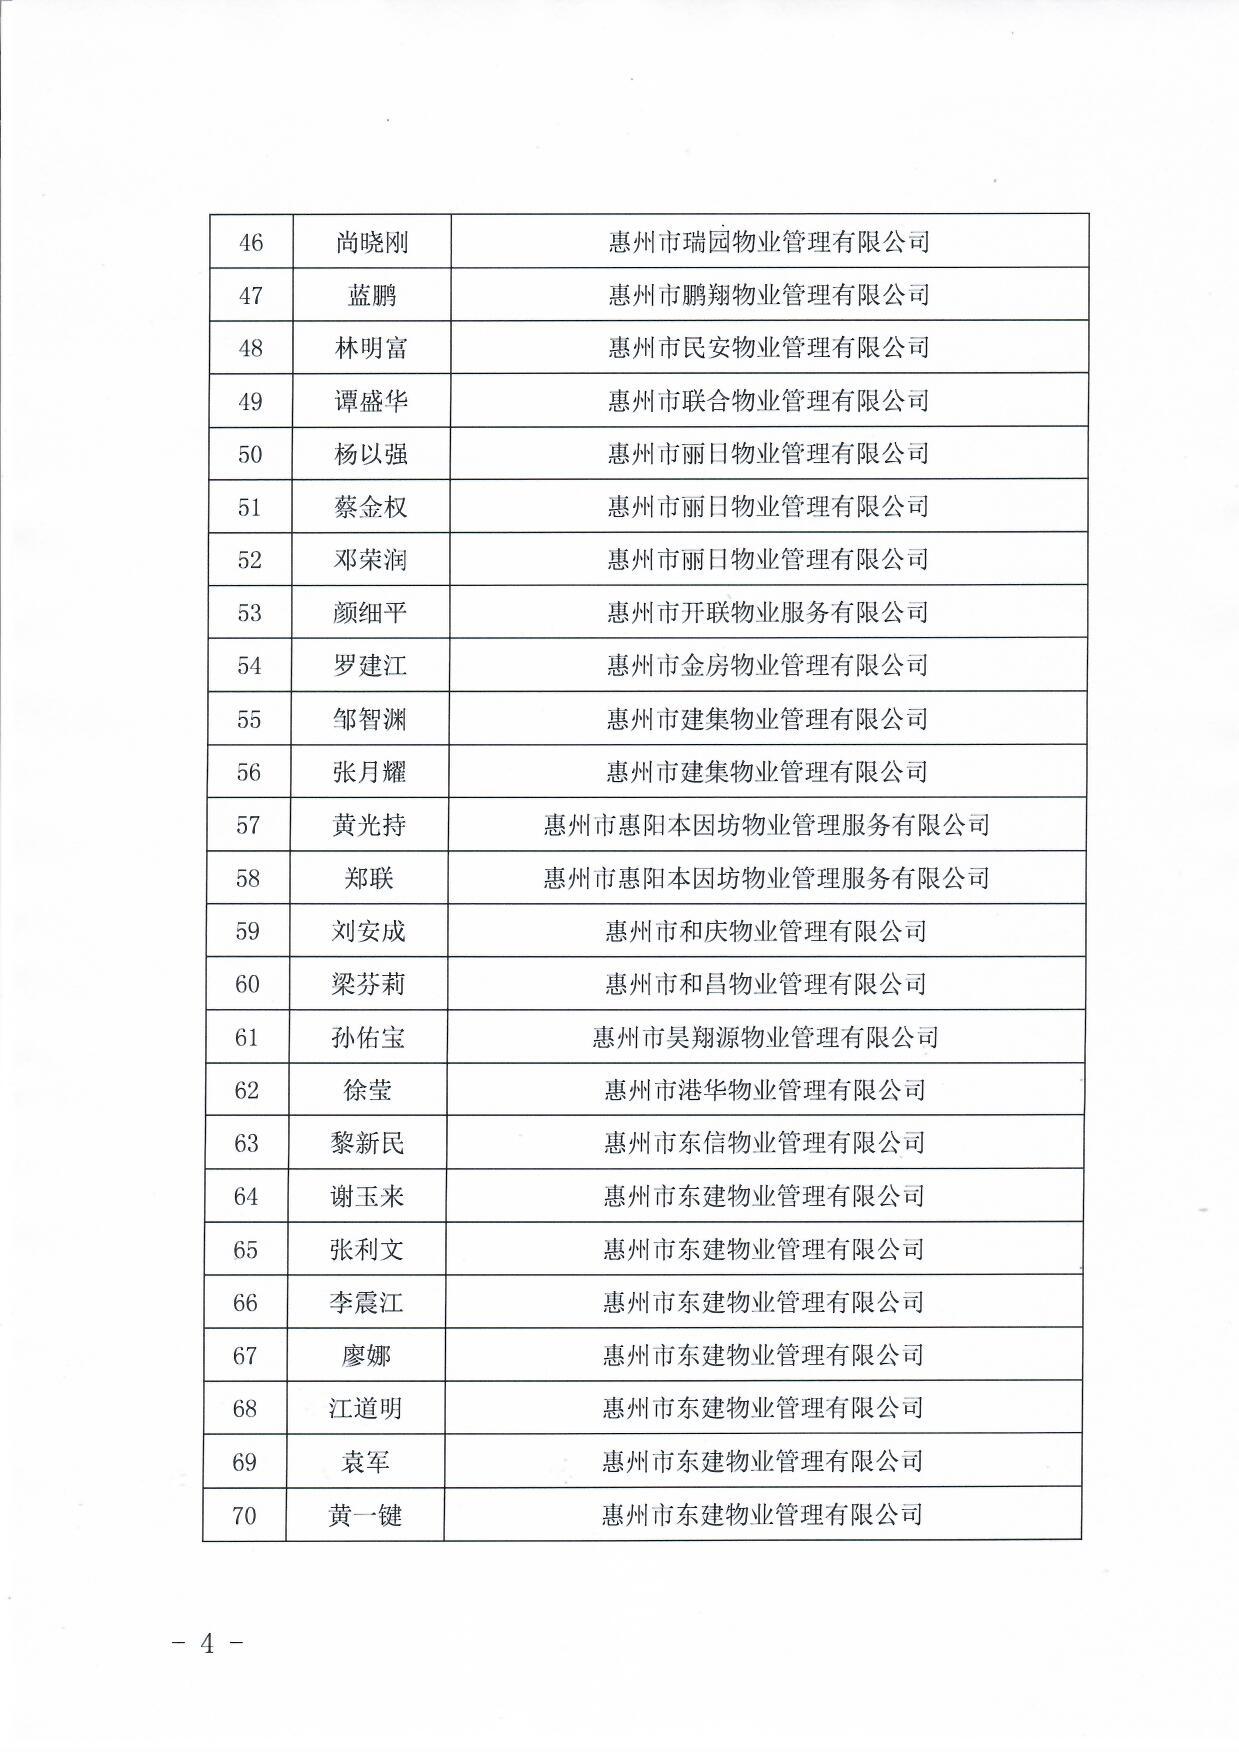 关于惠州市物业服务行业专家库入库成员名单的公告4.jpg